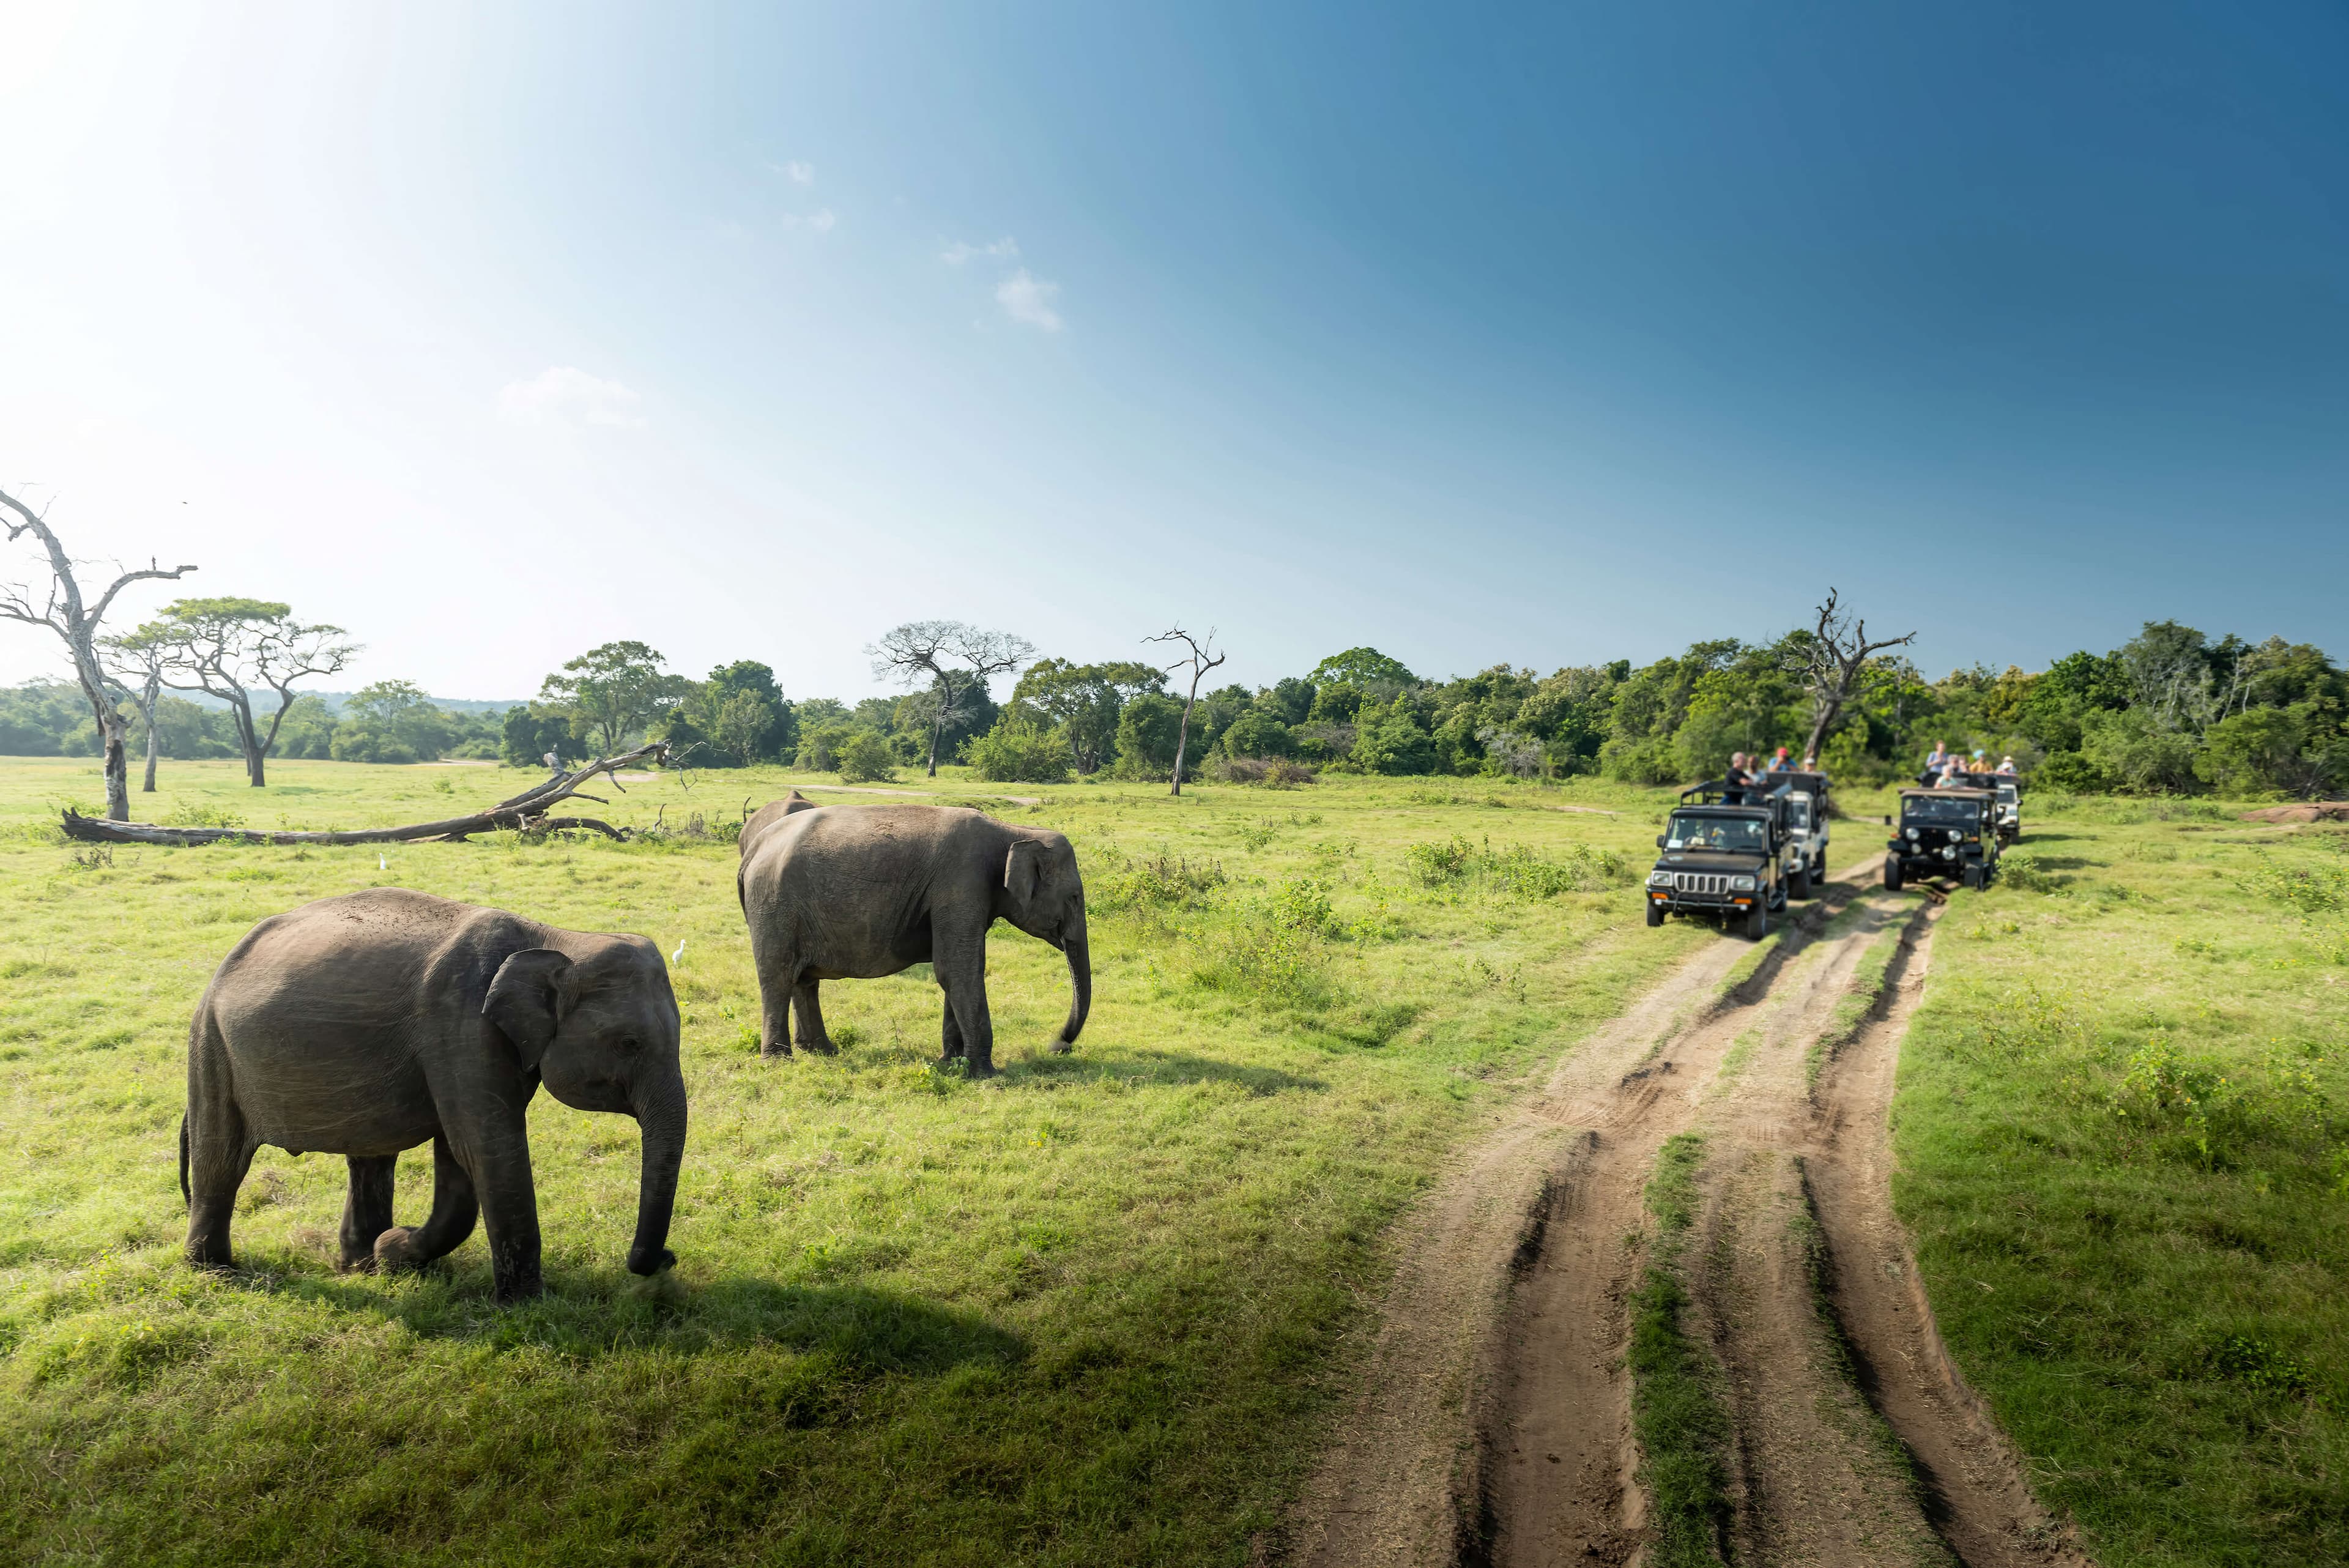 Wild elephants in the beautiful landscape in Yala, Sri Lanka.